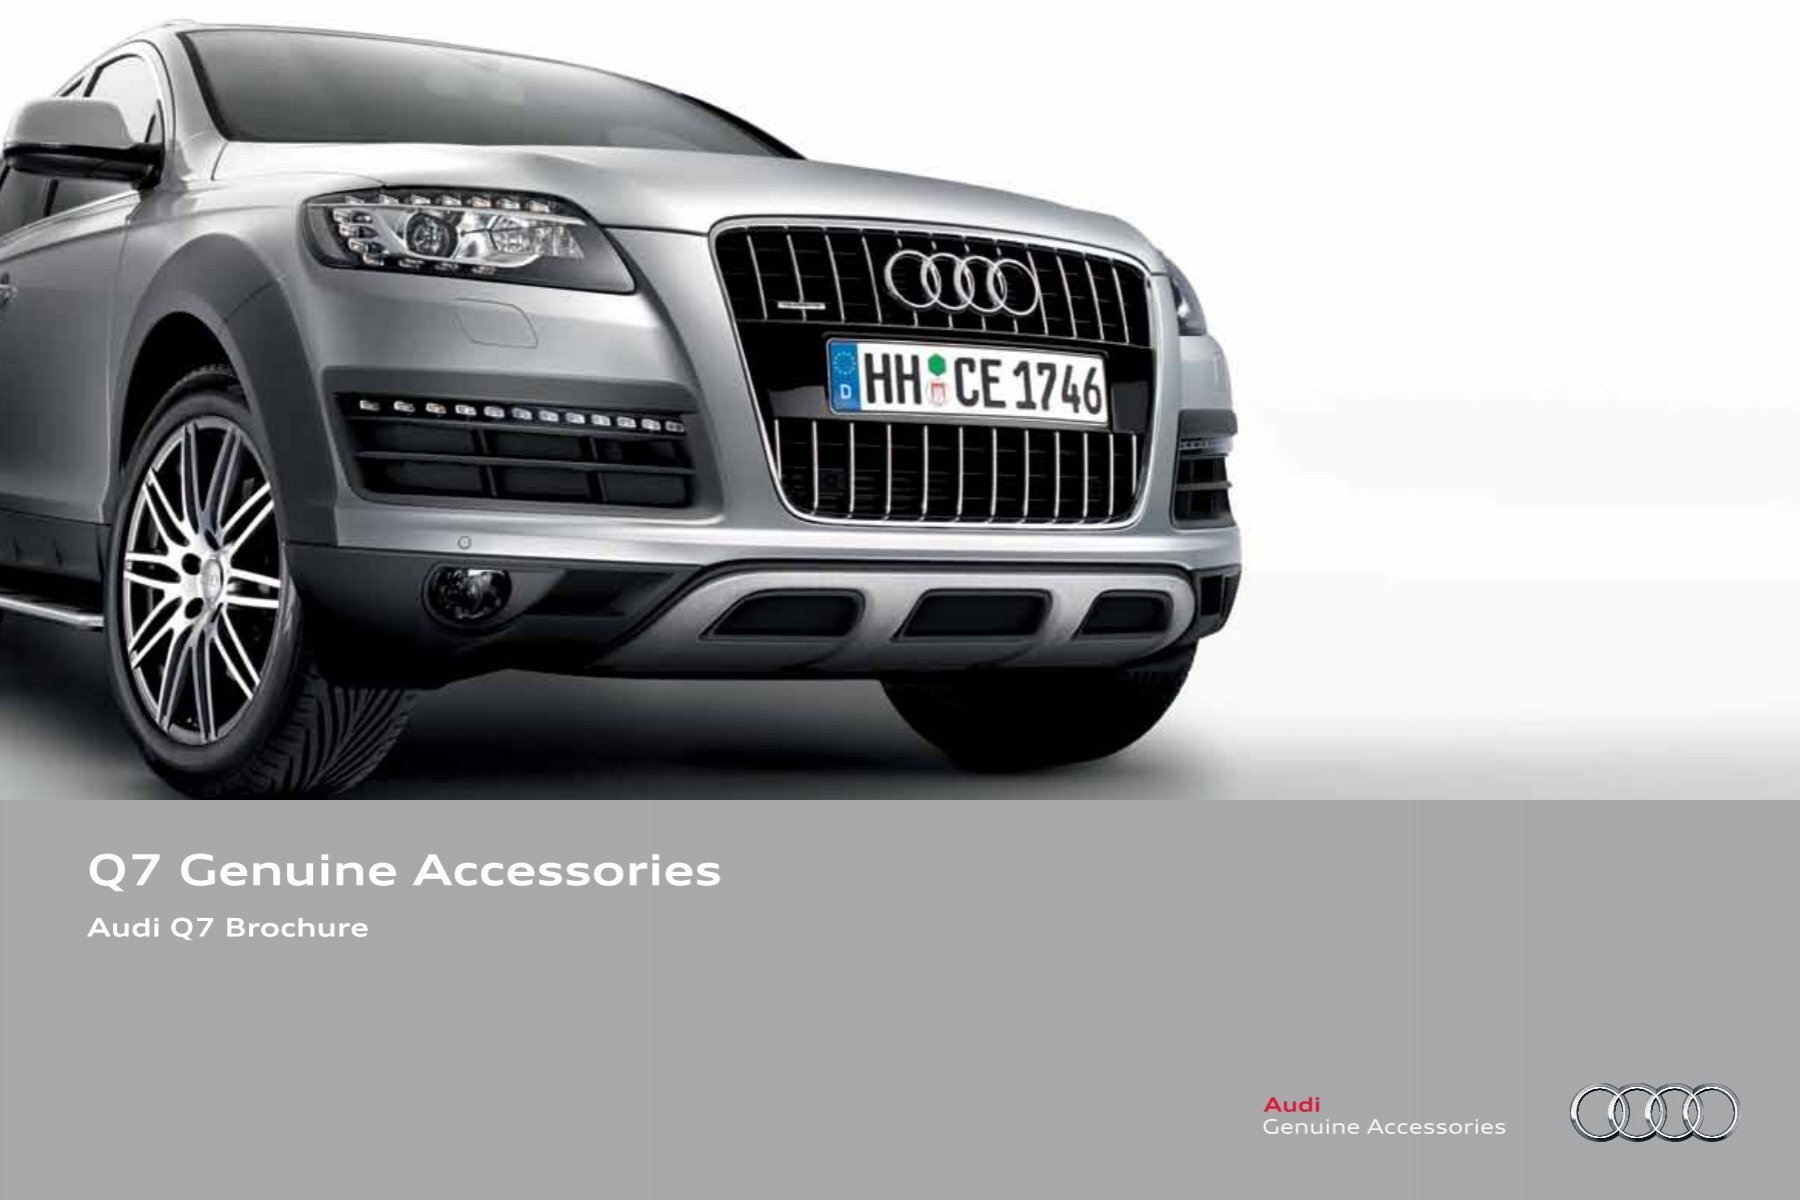 Audi Genuine Accessories